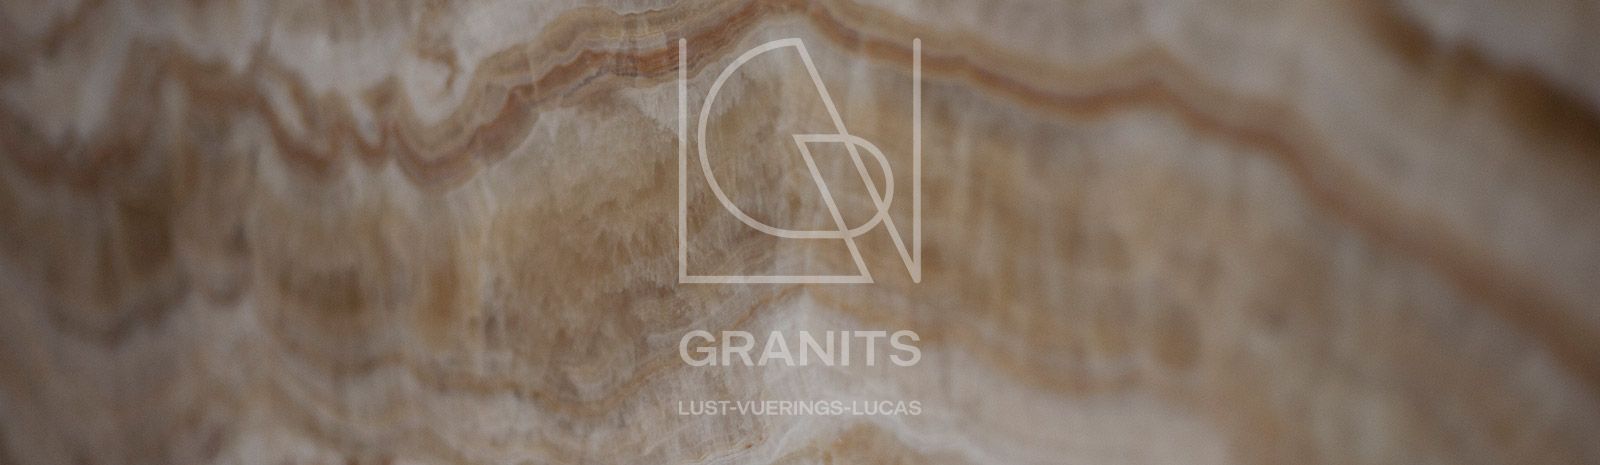 Granits Lust-Vuerings-Lucas - Marbre